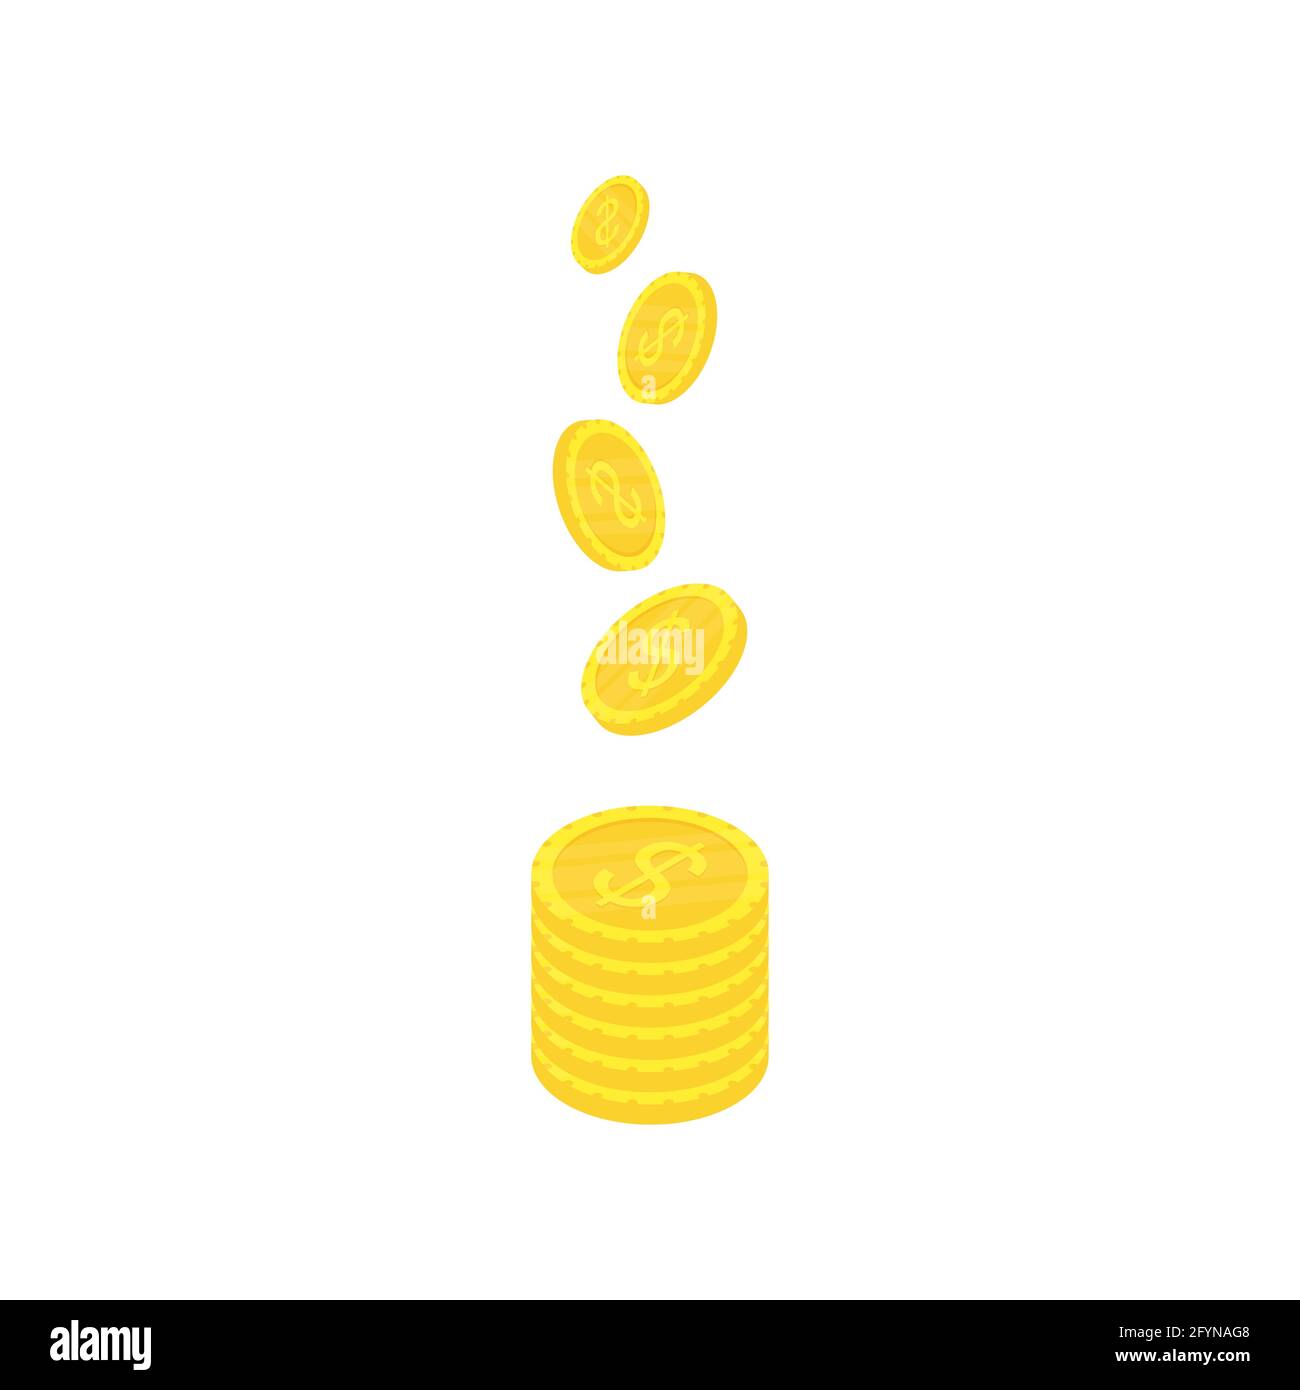 Monedas isométricas de oro. Símbolo de dinero. Concepto de riqueza. Ilustración vectorial aislada sobre blanco Ilustración del Vector